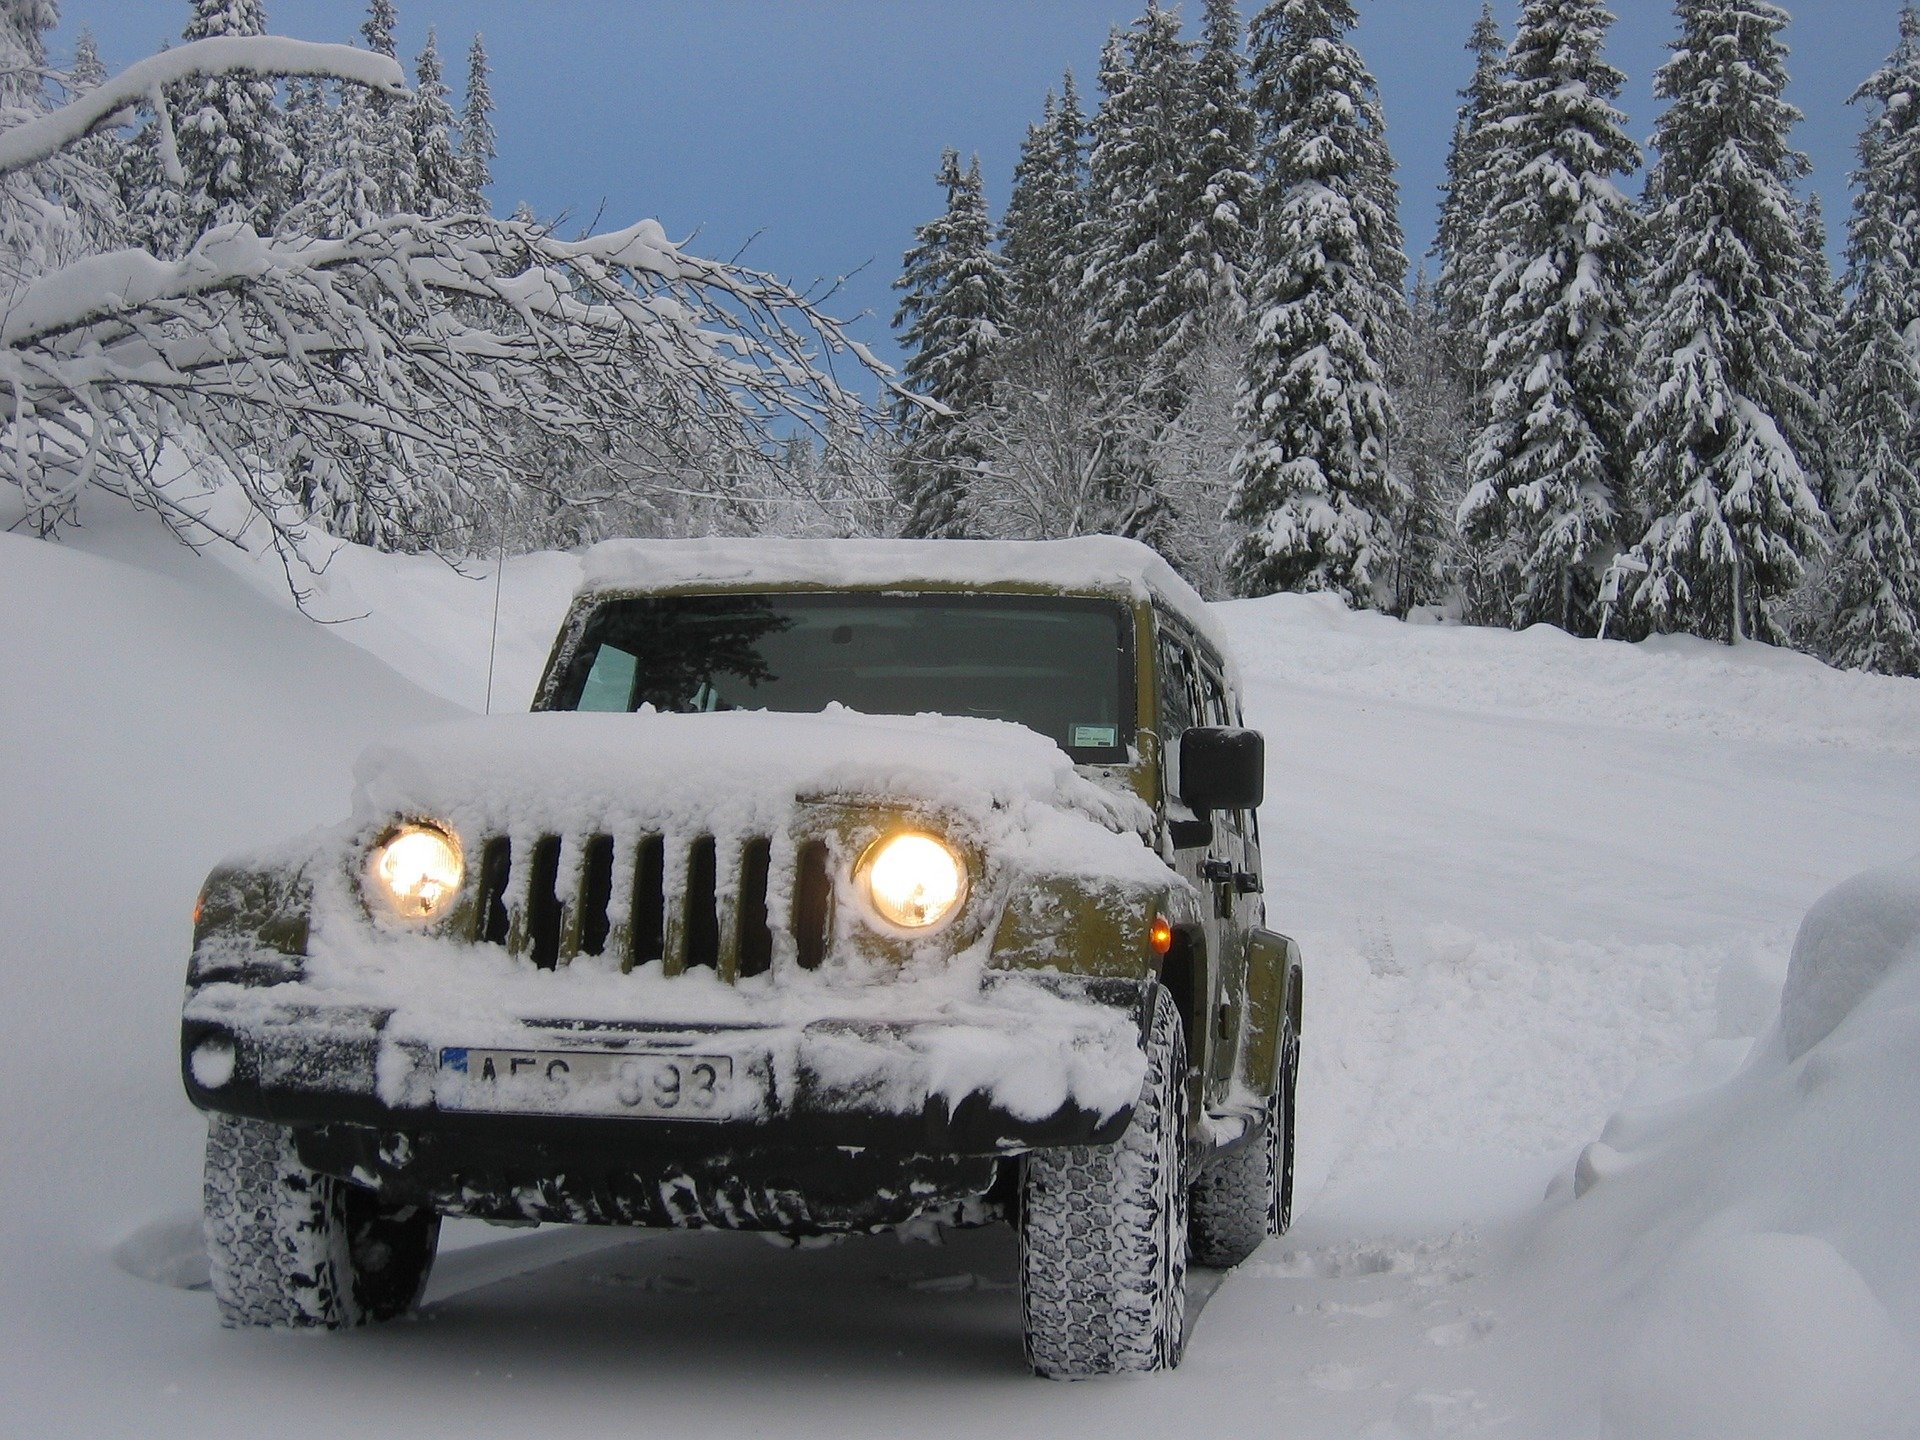 Základem pro bezpečnou jízdu v zimě jsou kvalitní zimní pneumatiky a dobrý stav vašeho vozidla